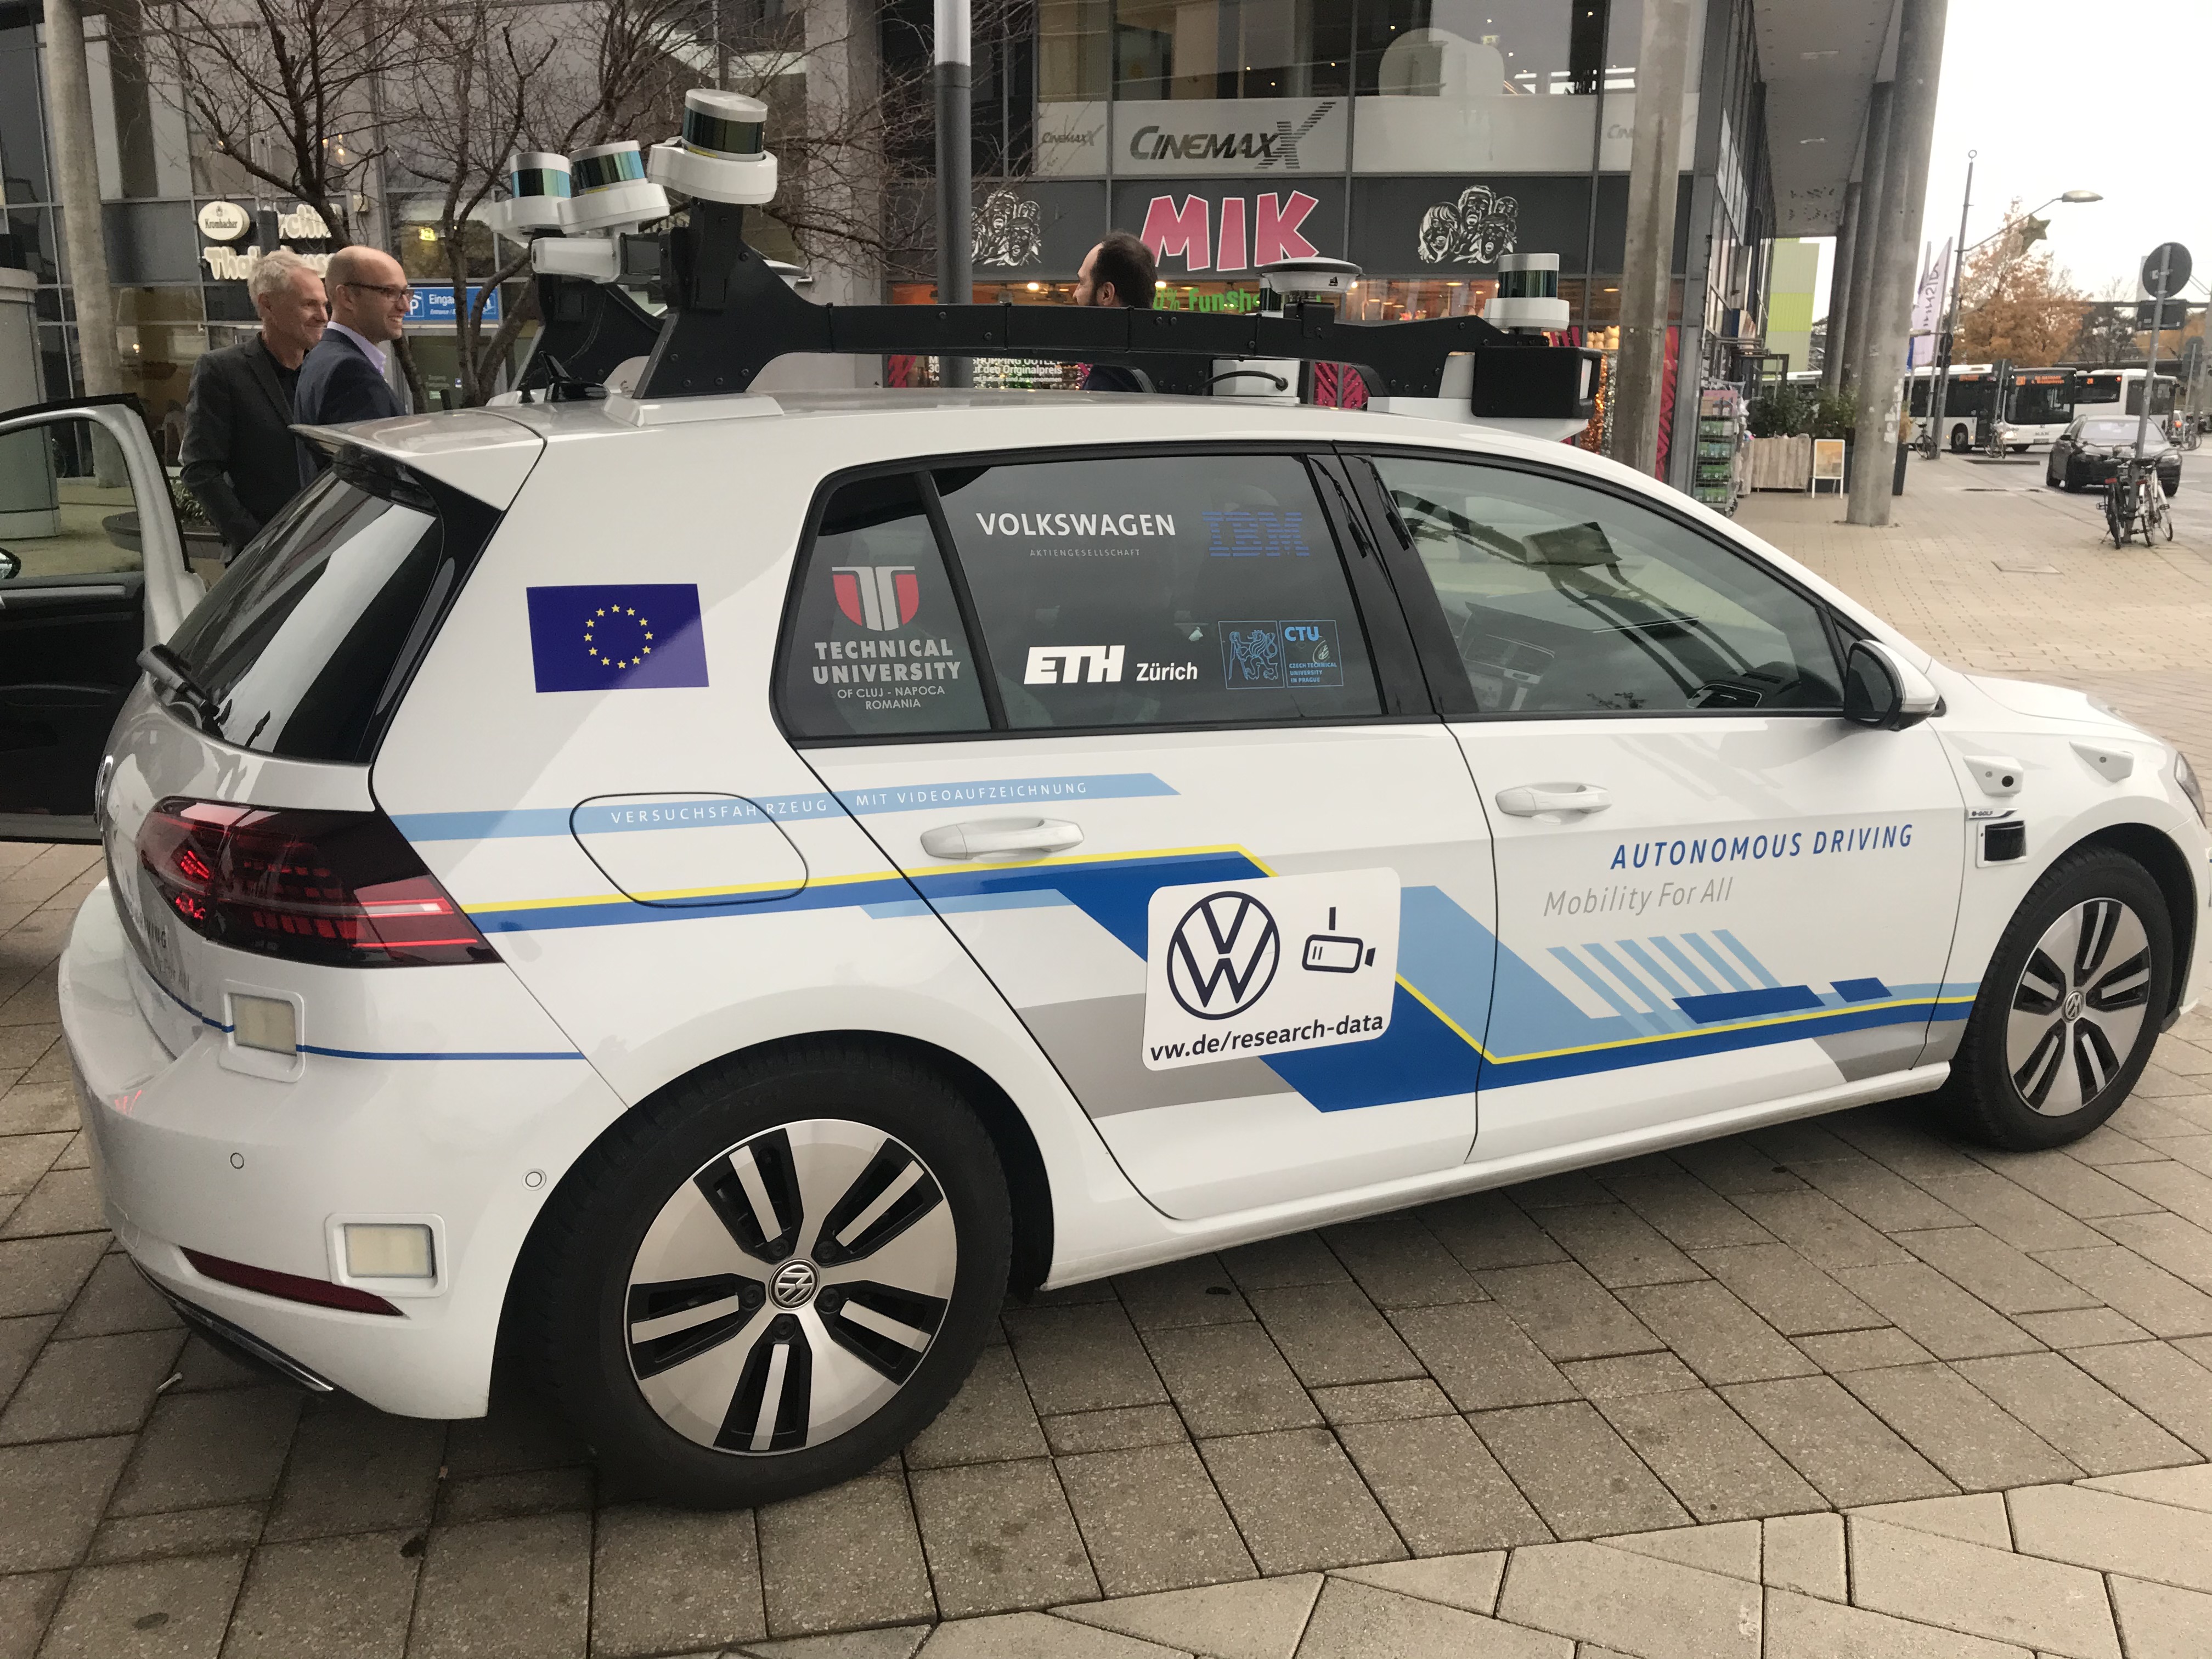 universitatea tehnică din cluj-napoca în "the champions league of autonomous driving"